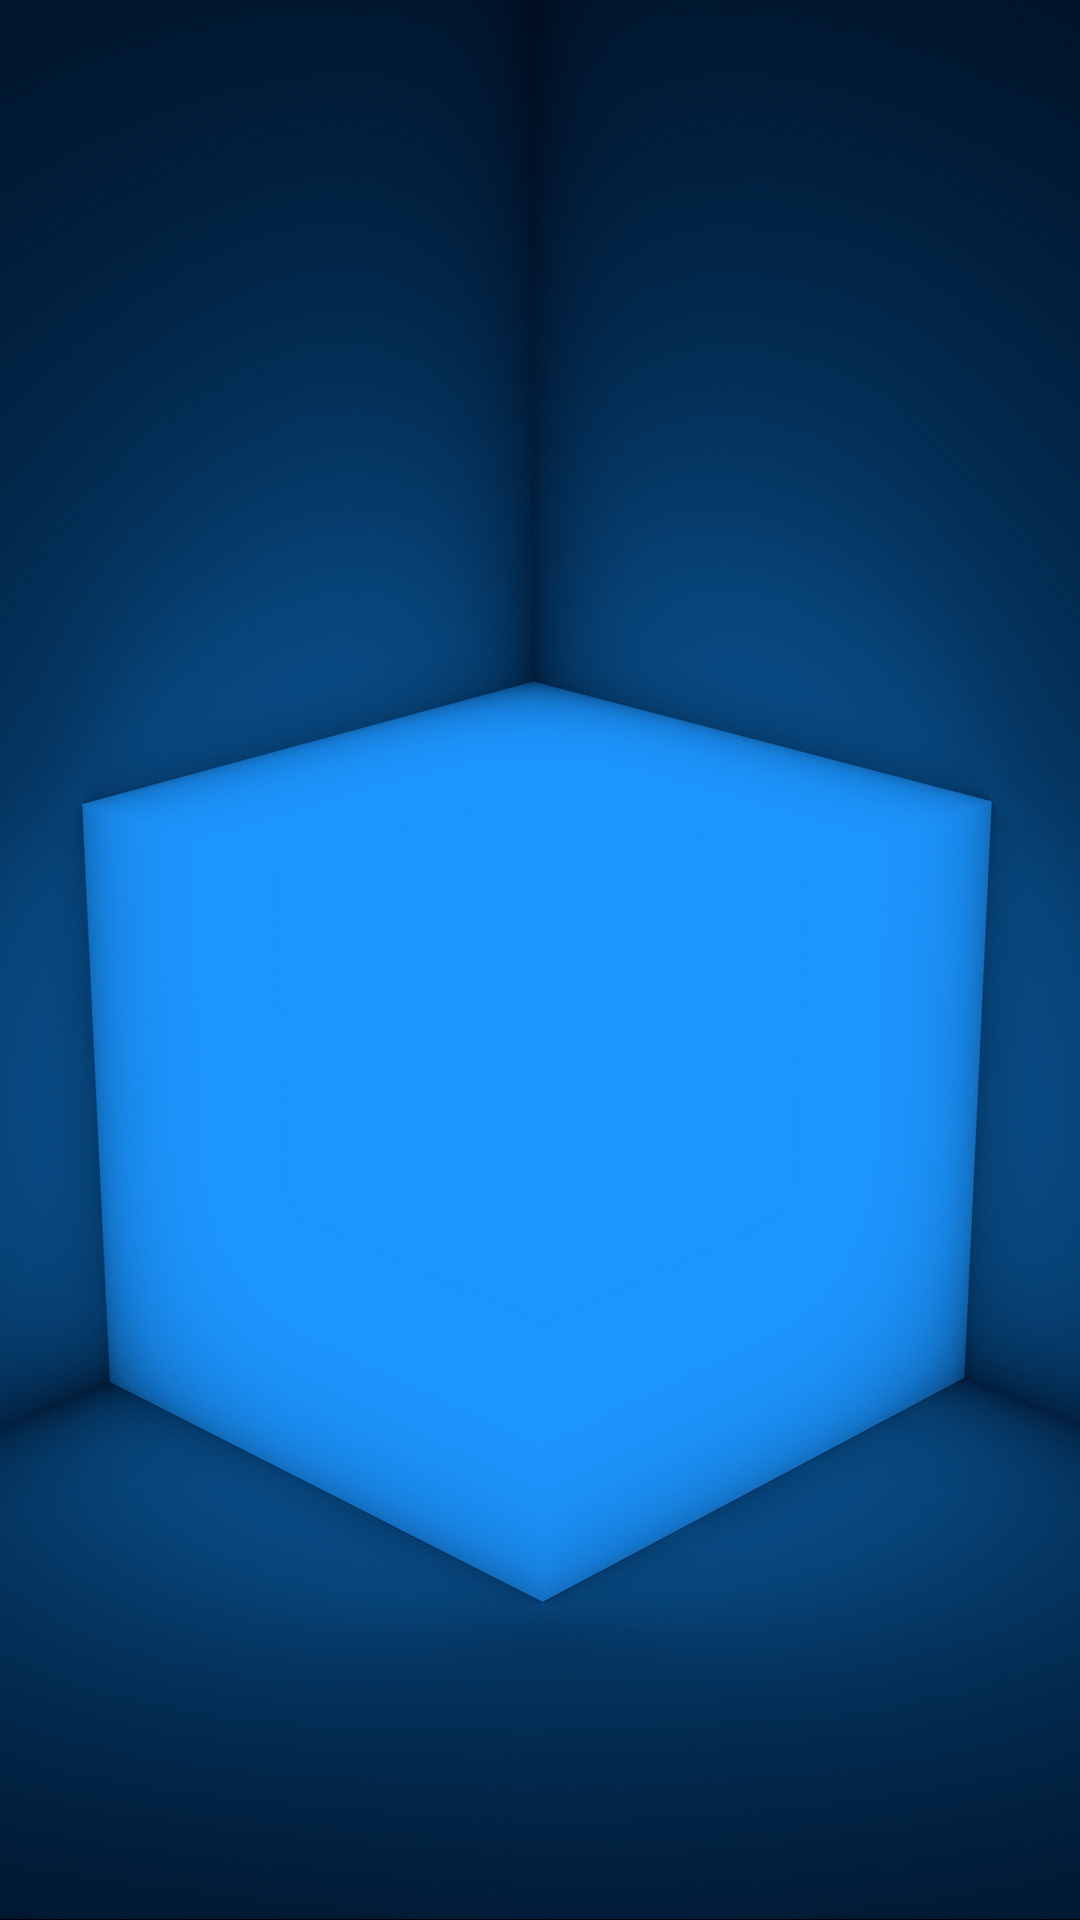 3d Cube Wallpaper Hd Image Num 38